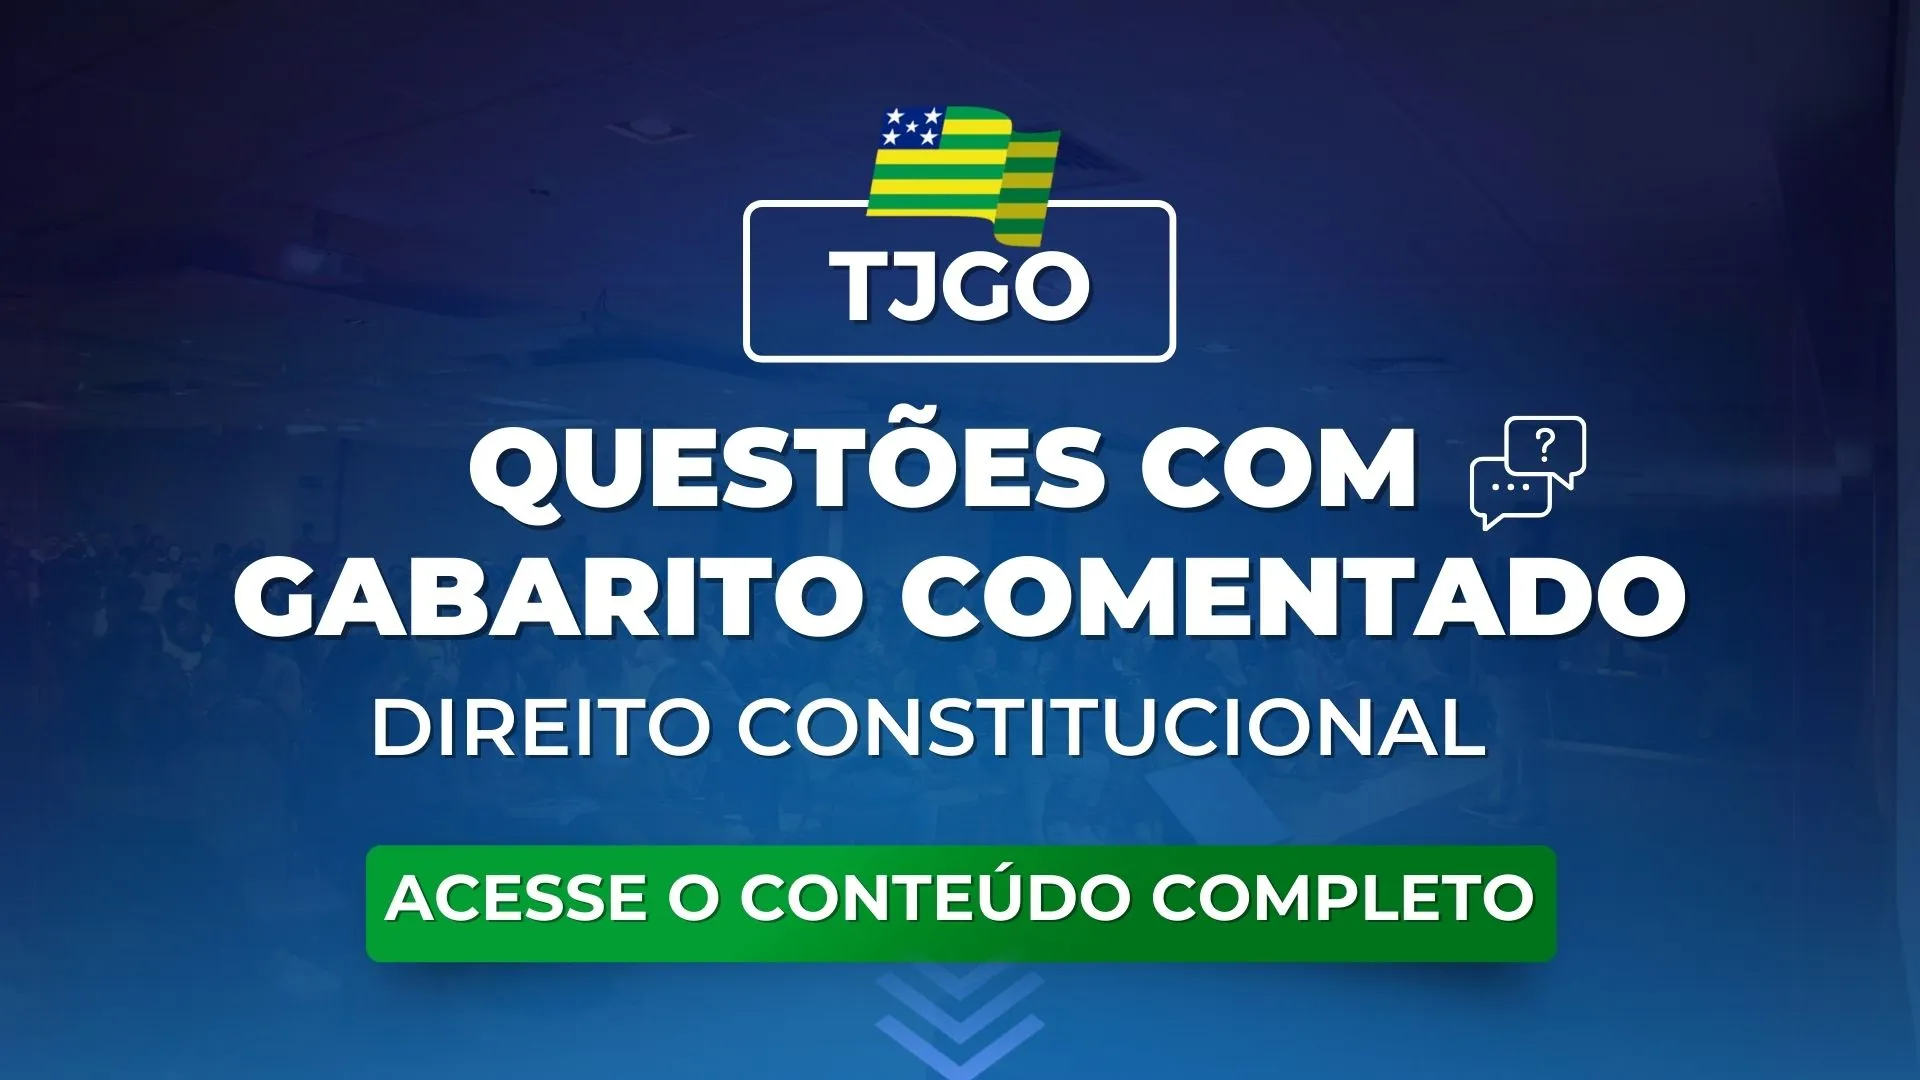 TJGO: Questões obrigatórias de Constitucional com gabarito comentado para o concurso